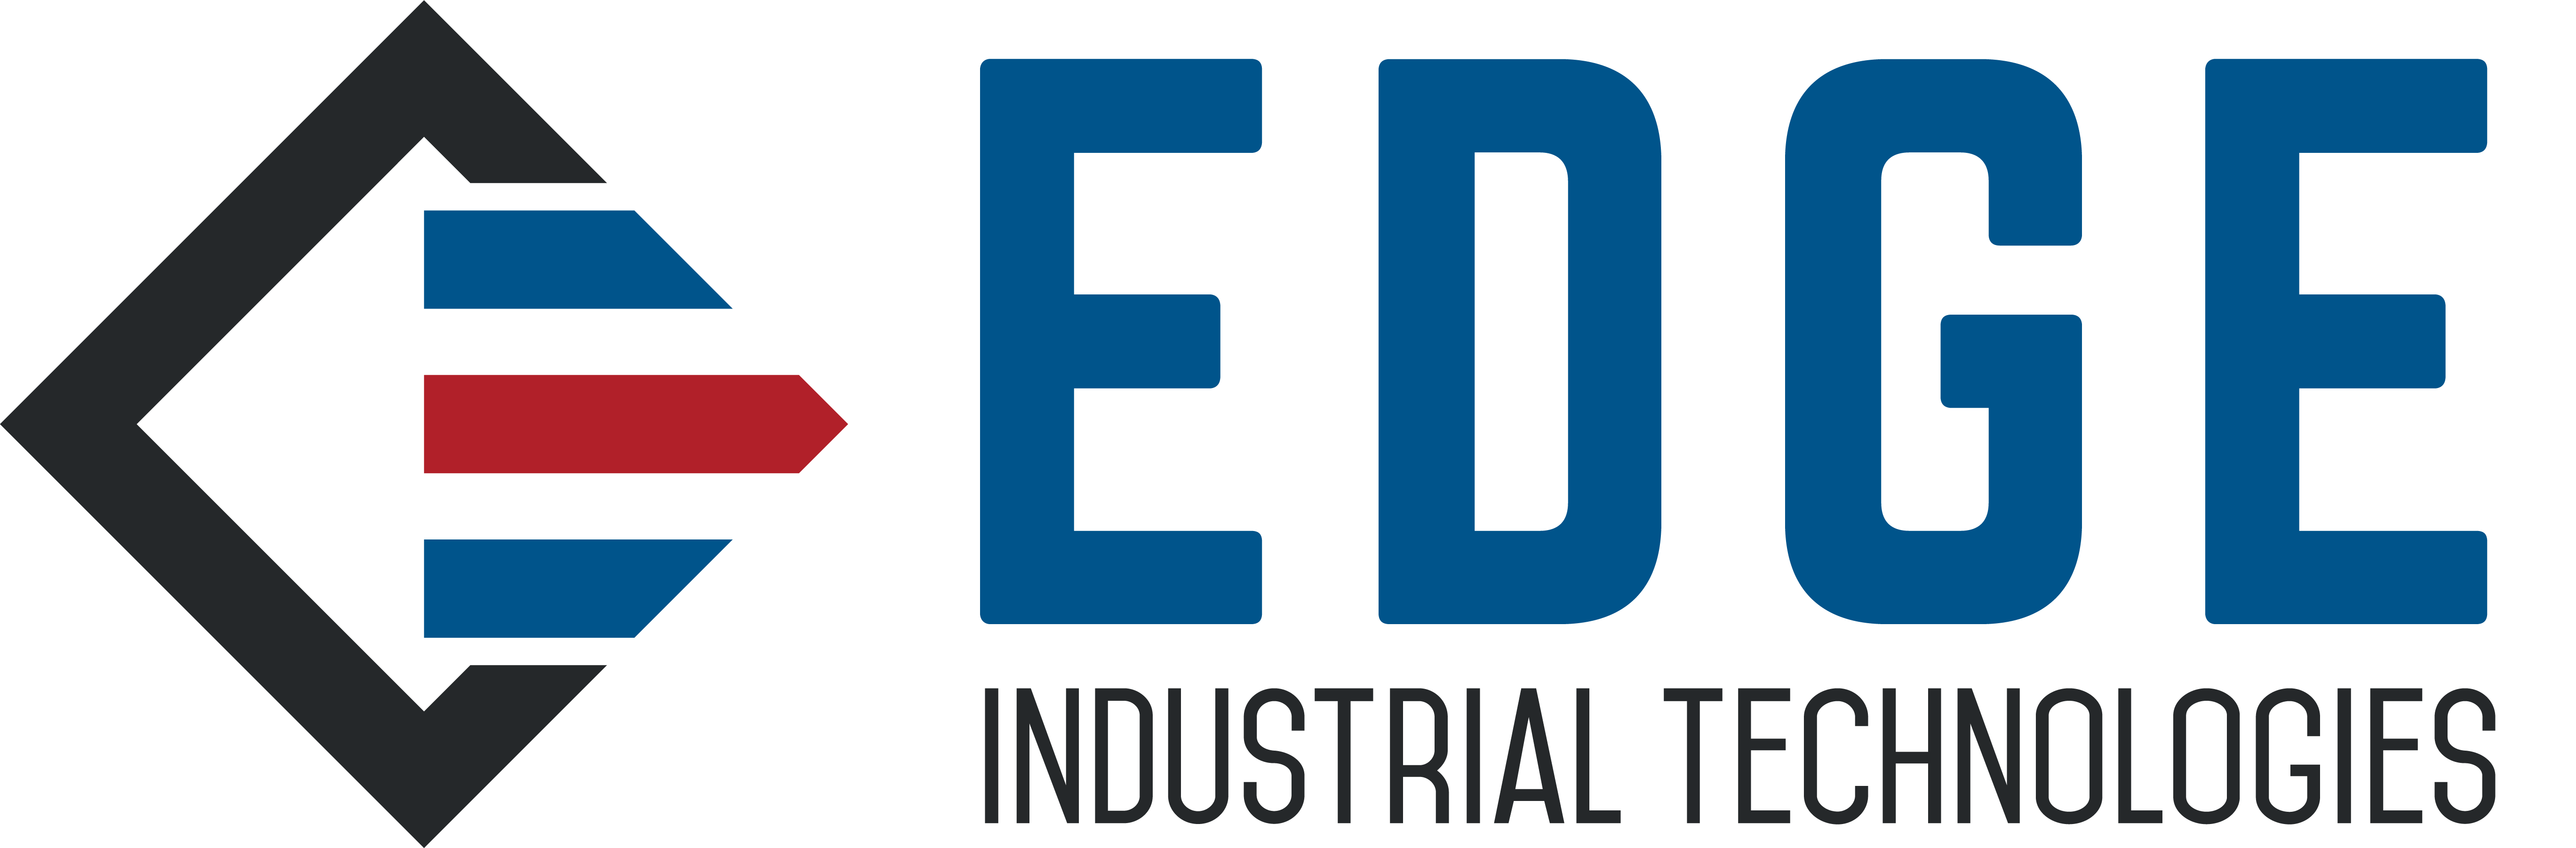 industrial logo maker